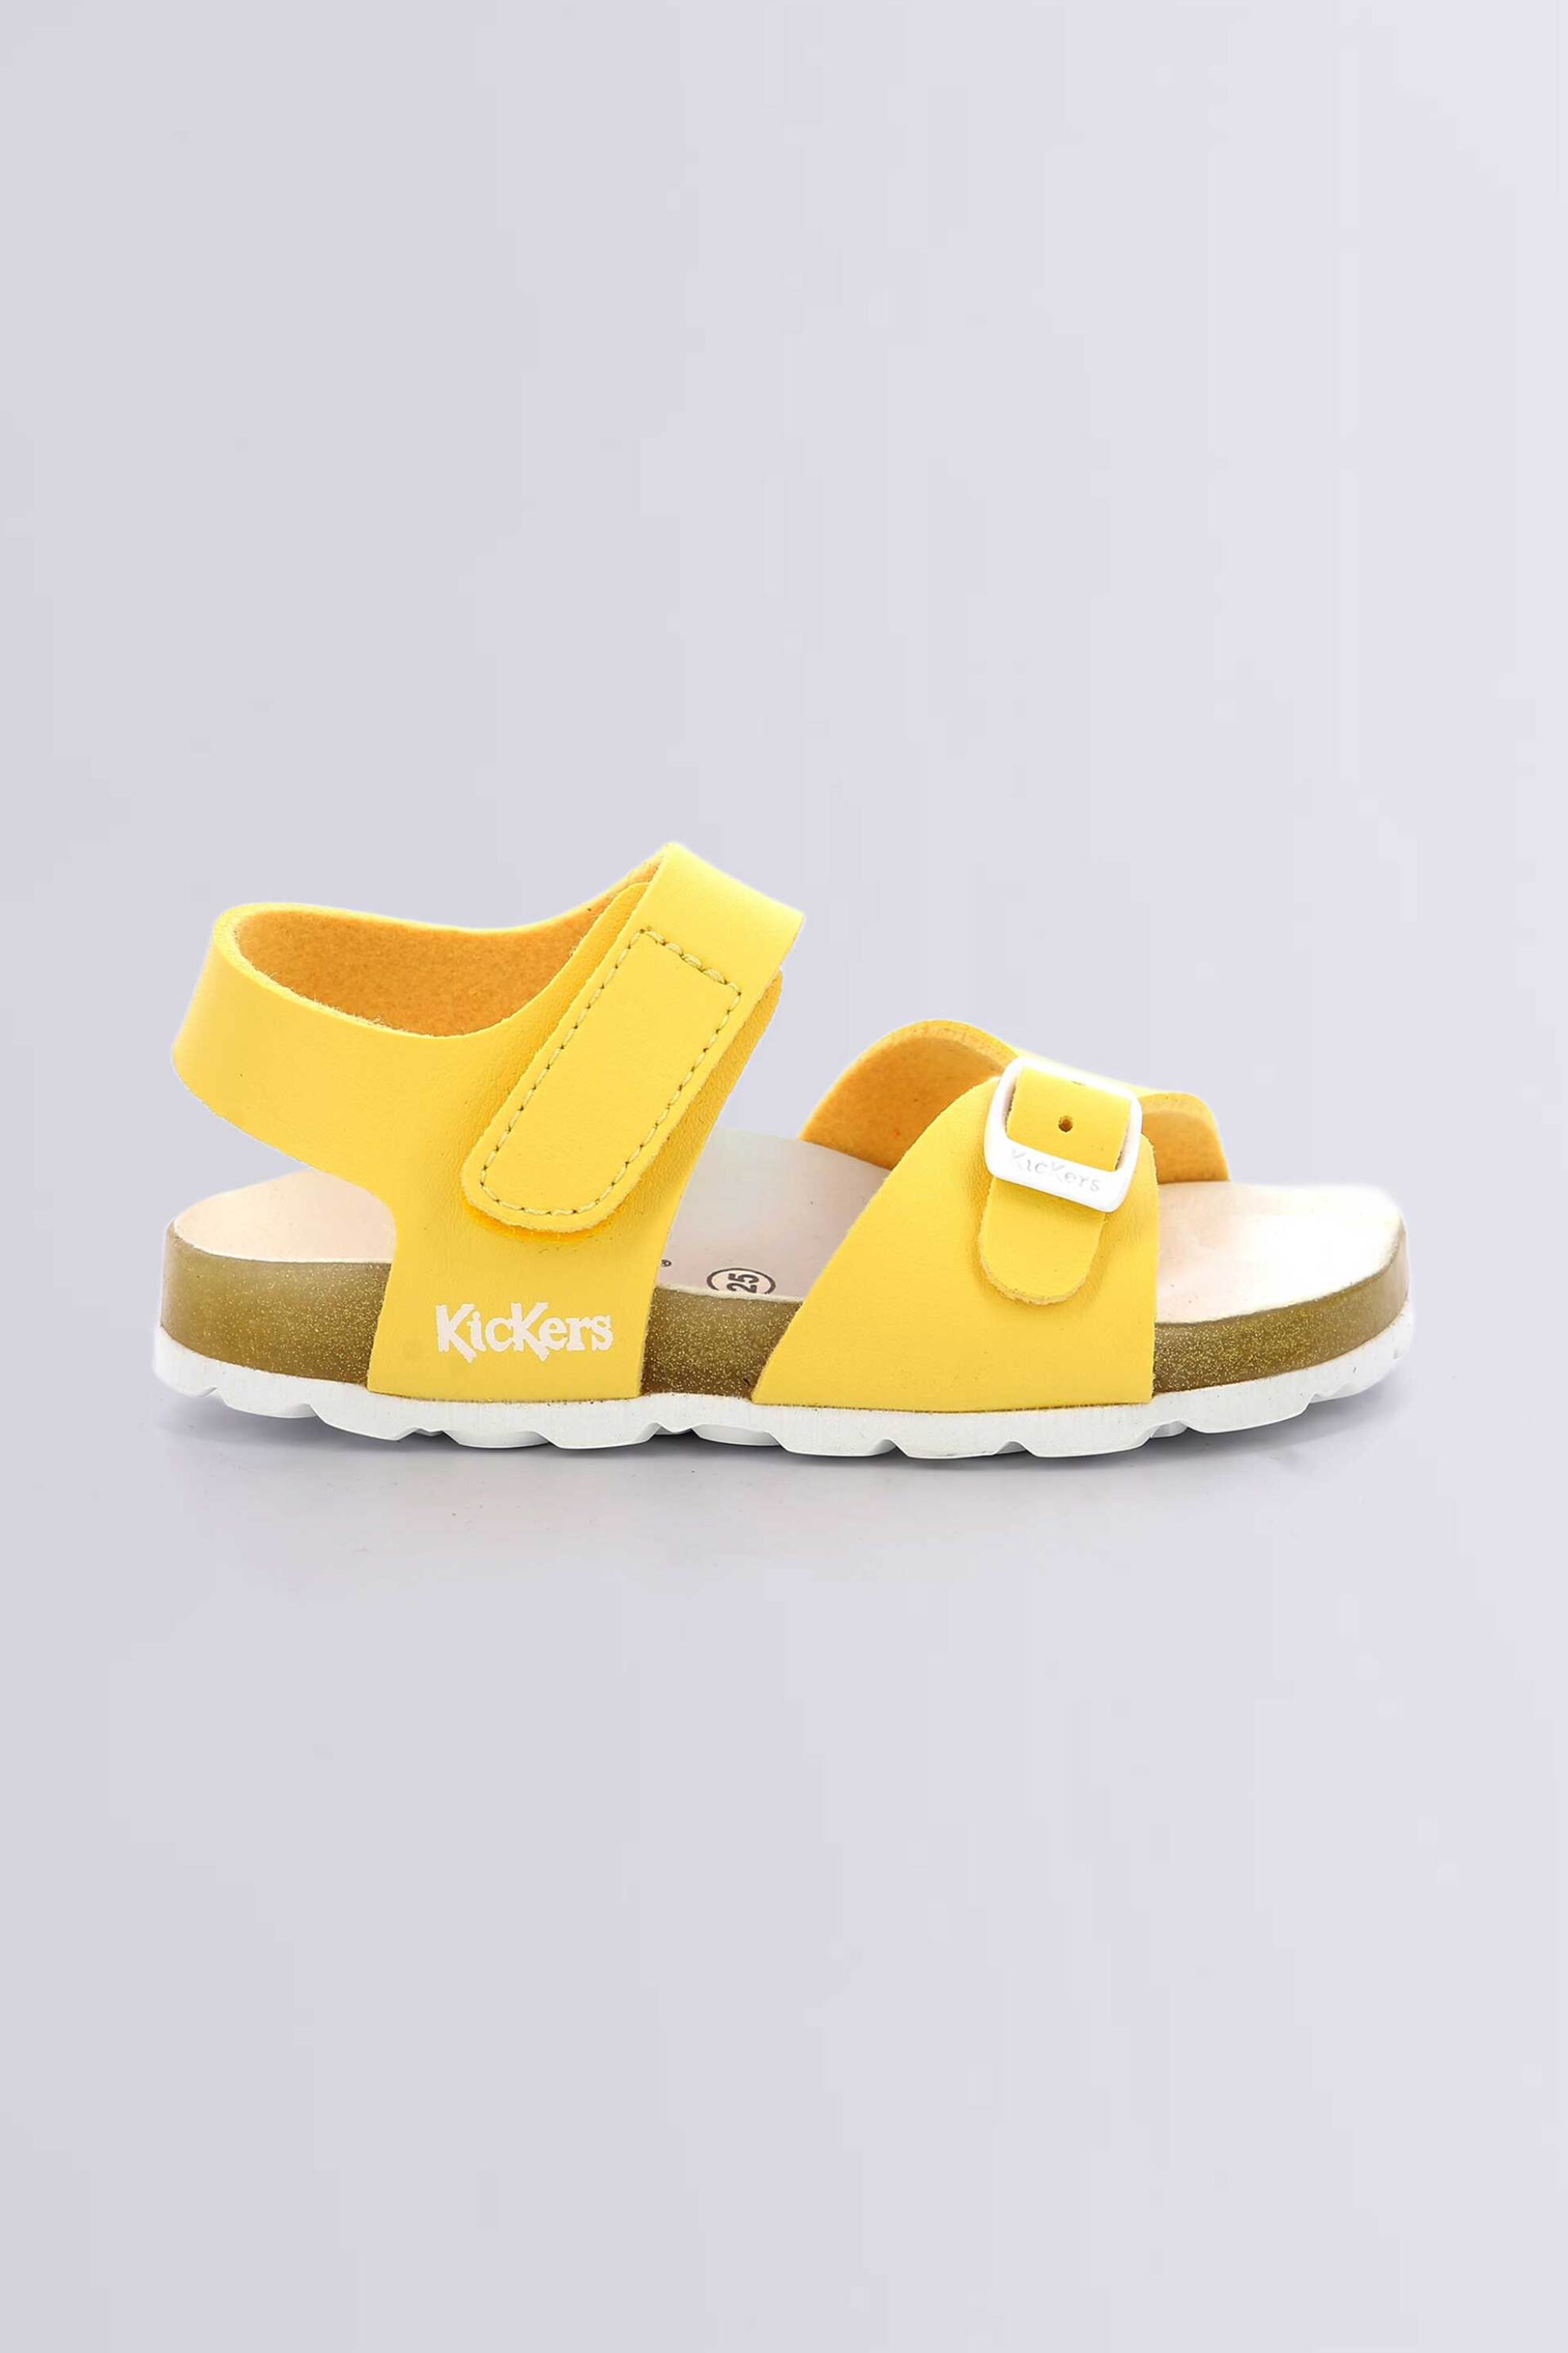 Παιδικά Ρούχα, Παπούτσια & Παιχνίδια > Παιδικά Παπούτσια > Βρεφικά Παπούτσια Kickers βρεφικά σανδάλια με λογότυπο "Sunkro" (26-27) - 858549-30 Κίτρινο